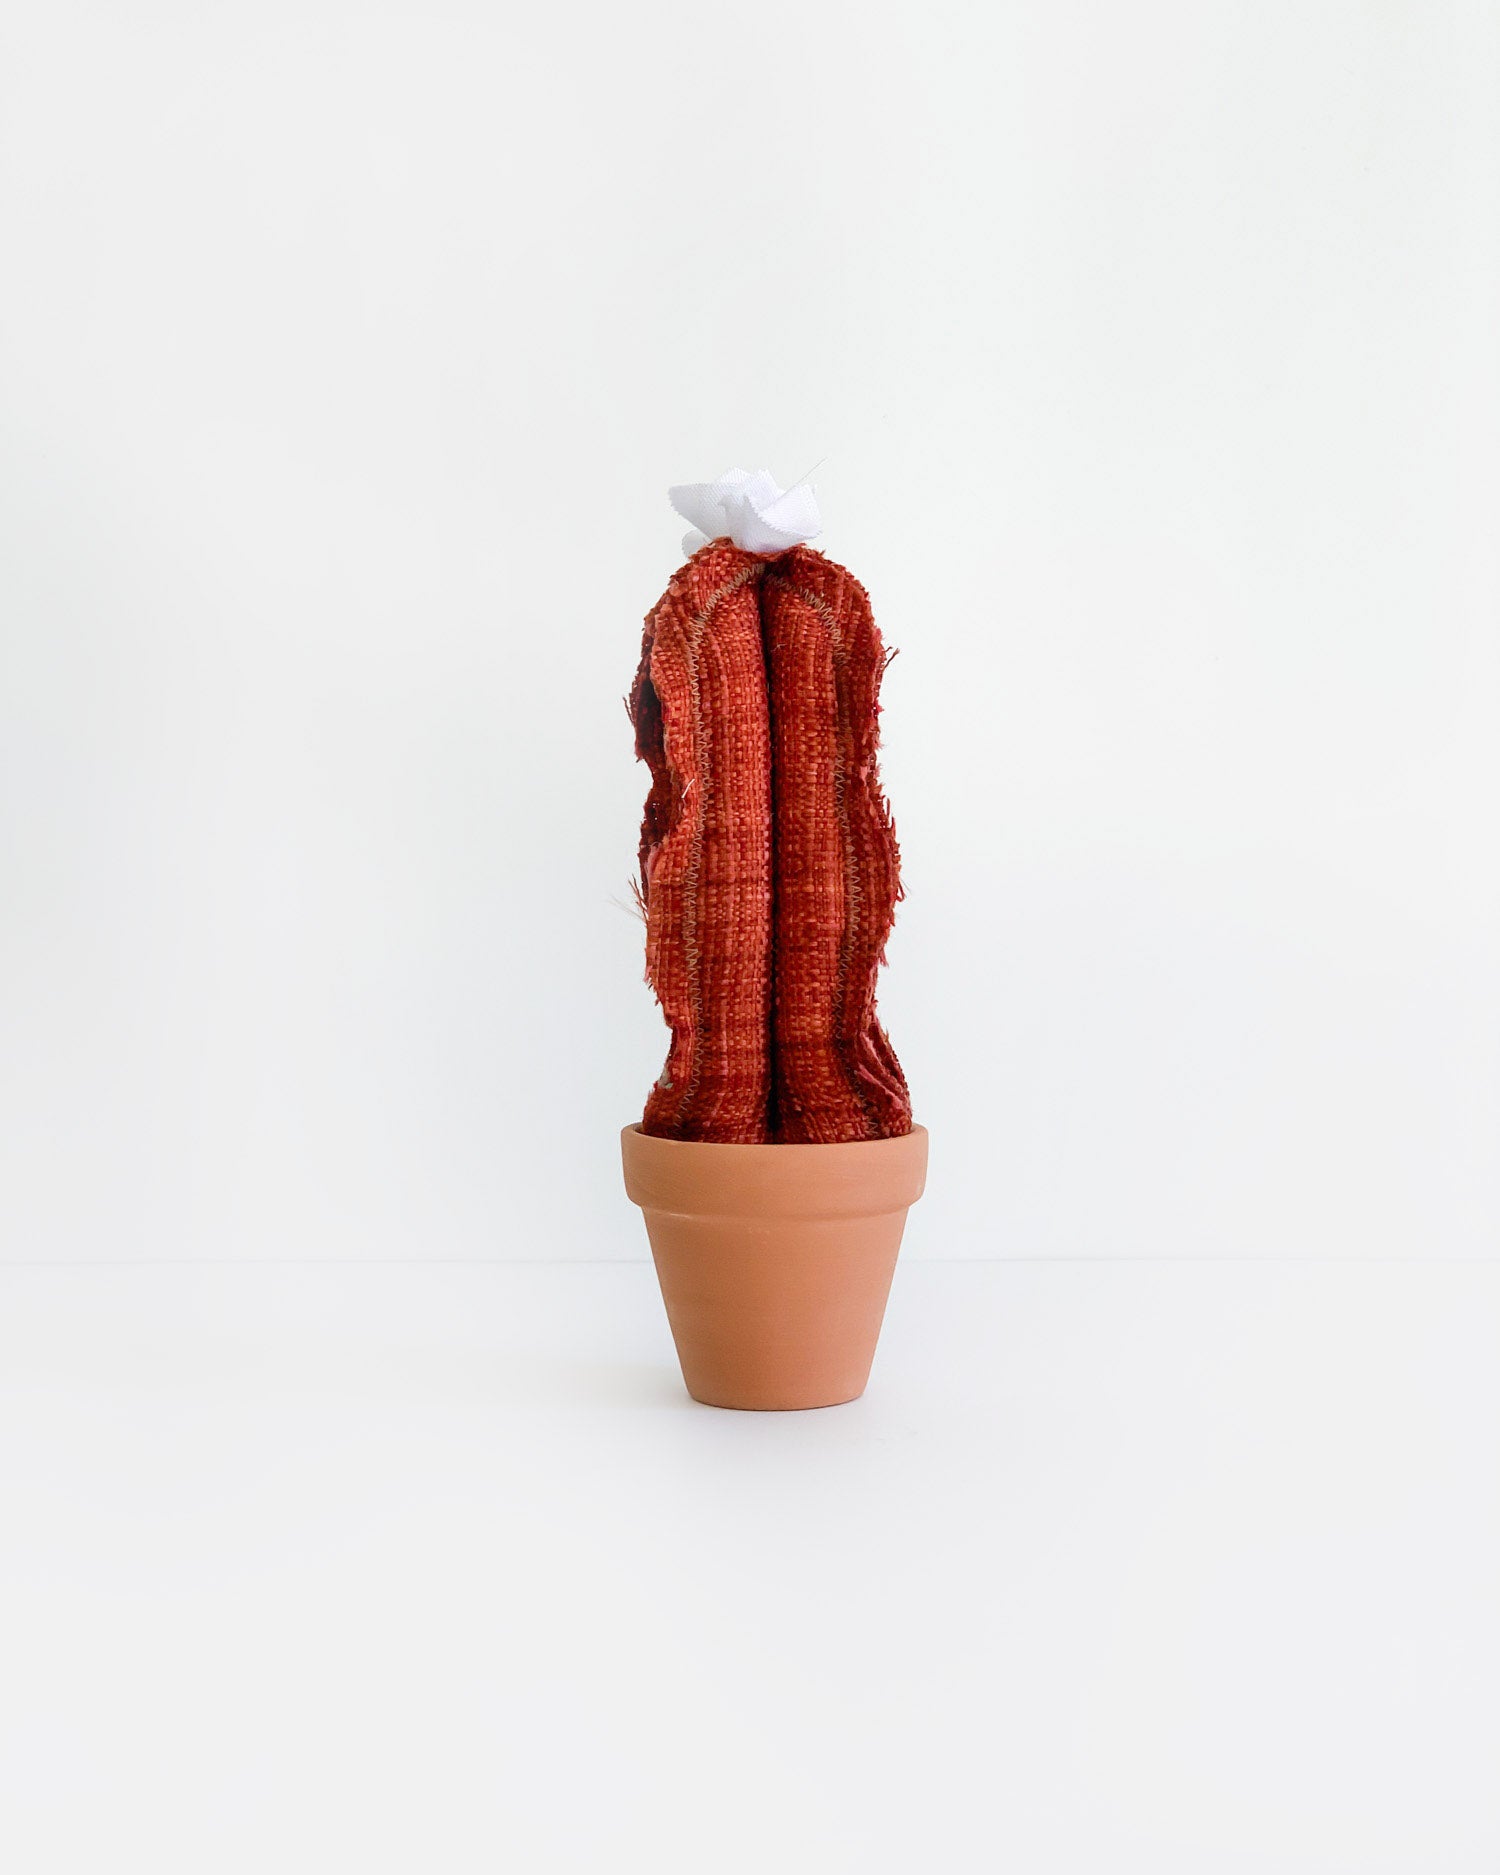 Mini Tall Column Cactus - Vintage Red (Sample)